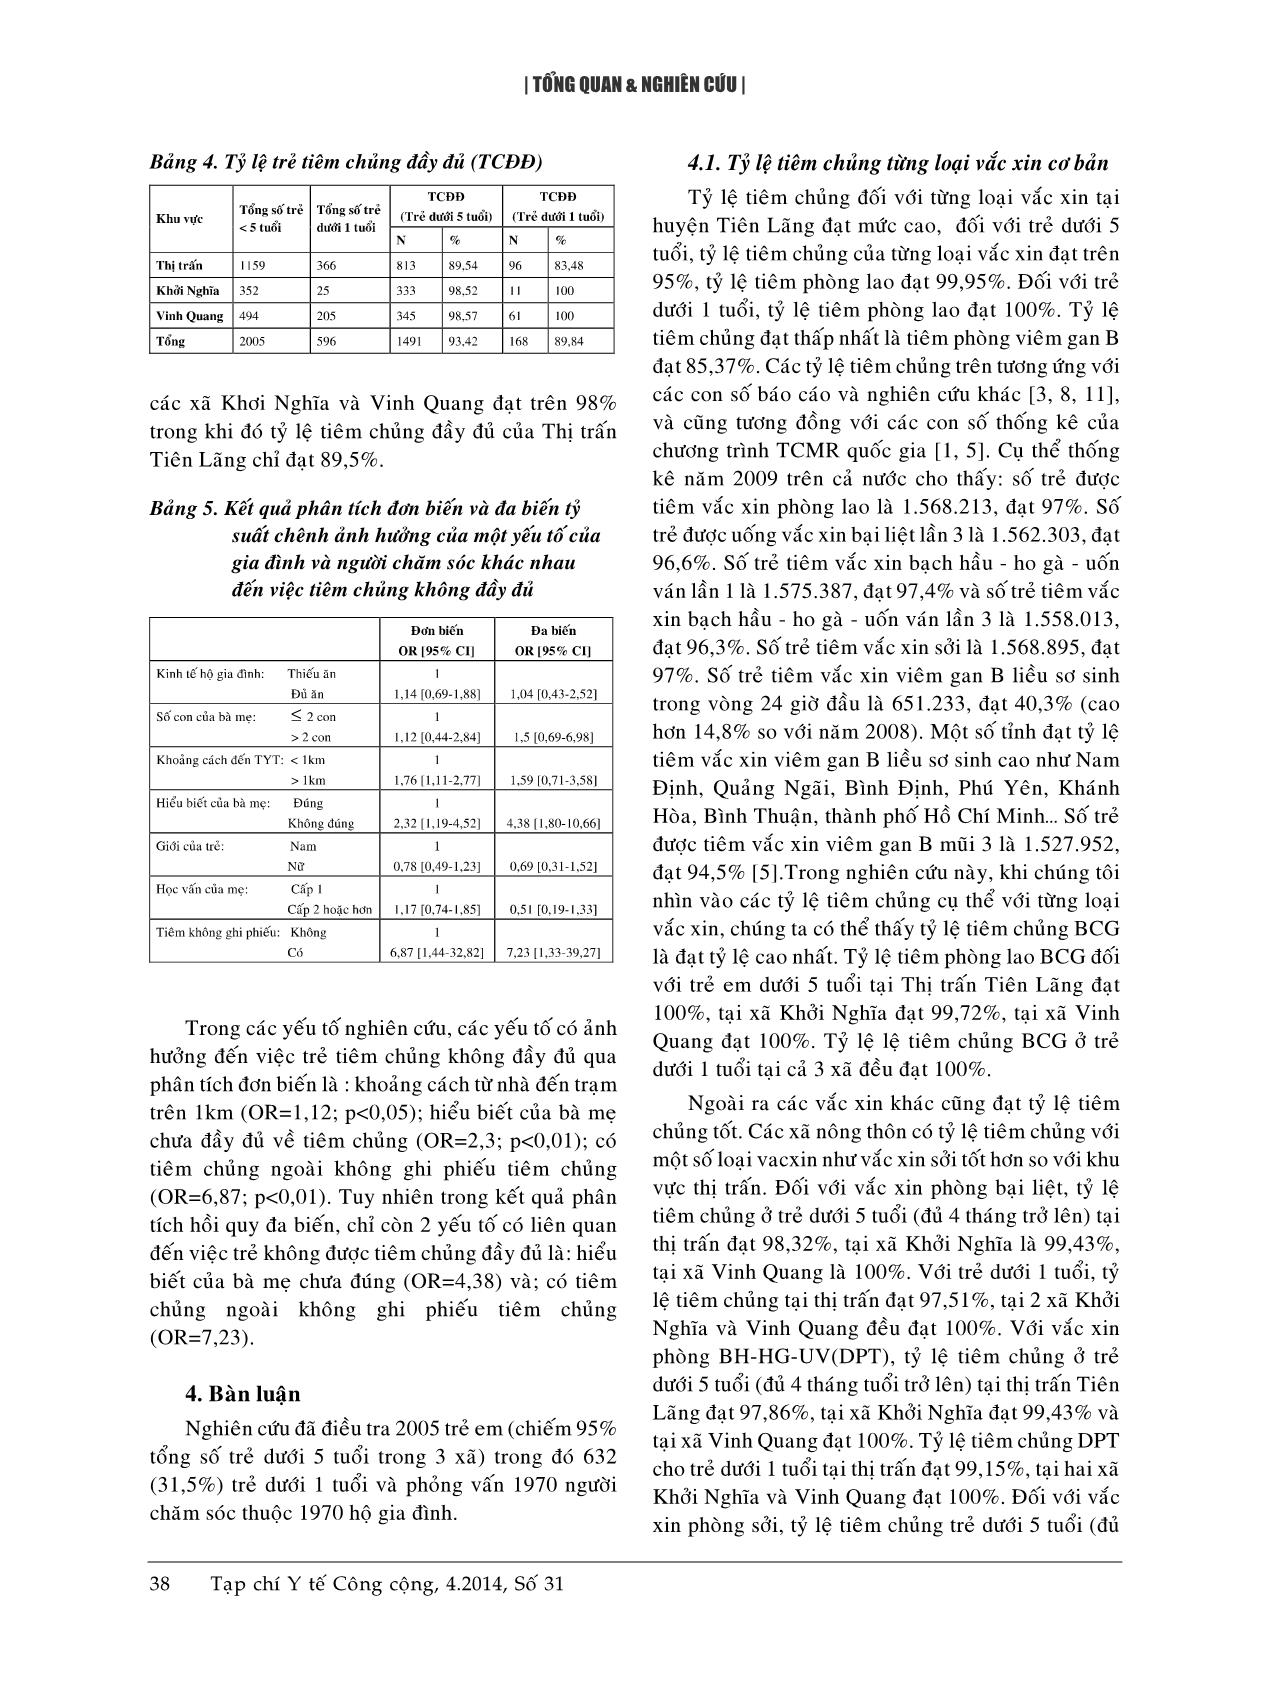 Tiêm chủng đầy đủ và một số yếu tố liên quan ở trẻ dưới 5 tuổi tại huyện Tiên Lãng, Hải Phòng - Năm 2010 trang 4